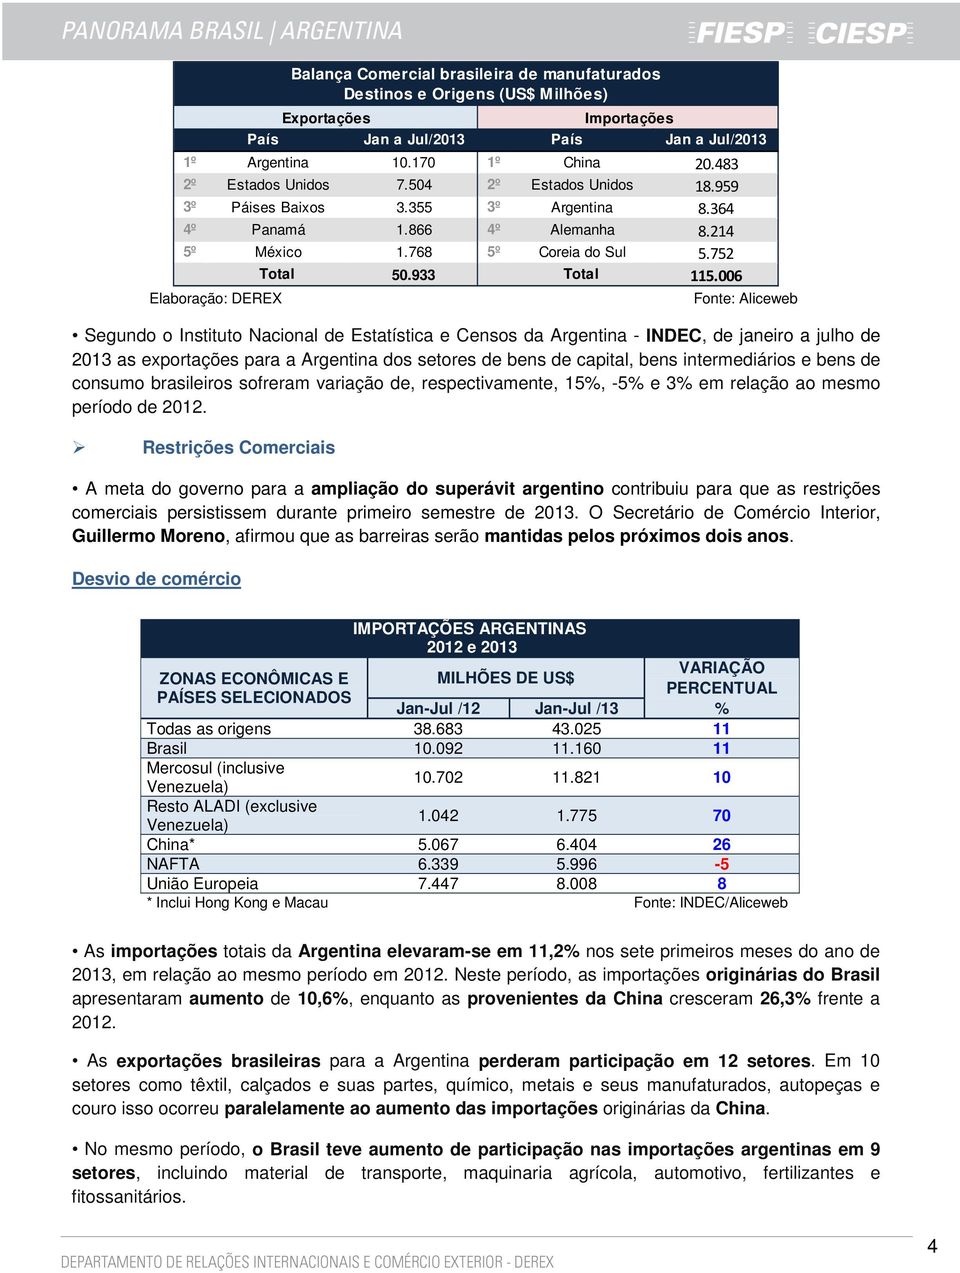 768 5º Fonte: Aliceweb Segundo o Instituto Nacional de Estatística e Censos da Argentina - INDEC, de janeiro a julho de 2013 as exportações para a Argentina dos setores de bens de capital, bens